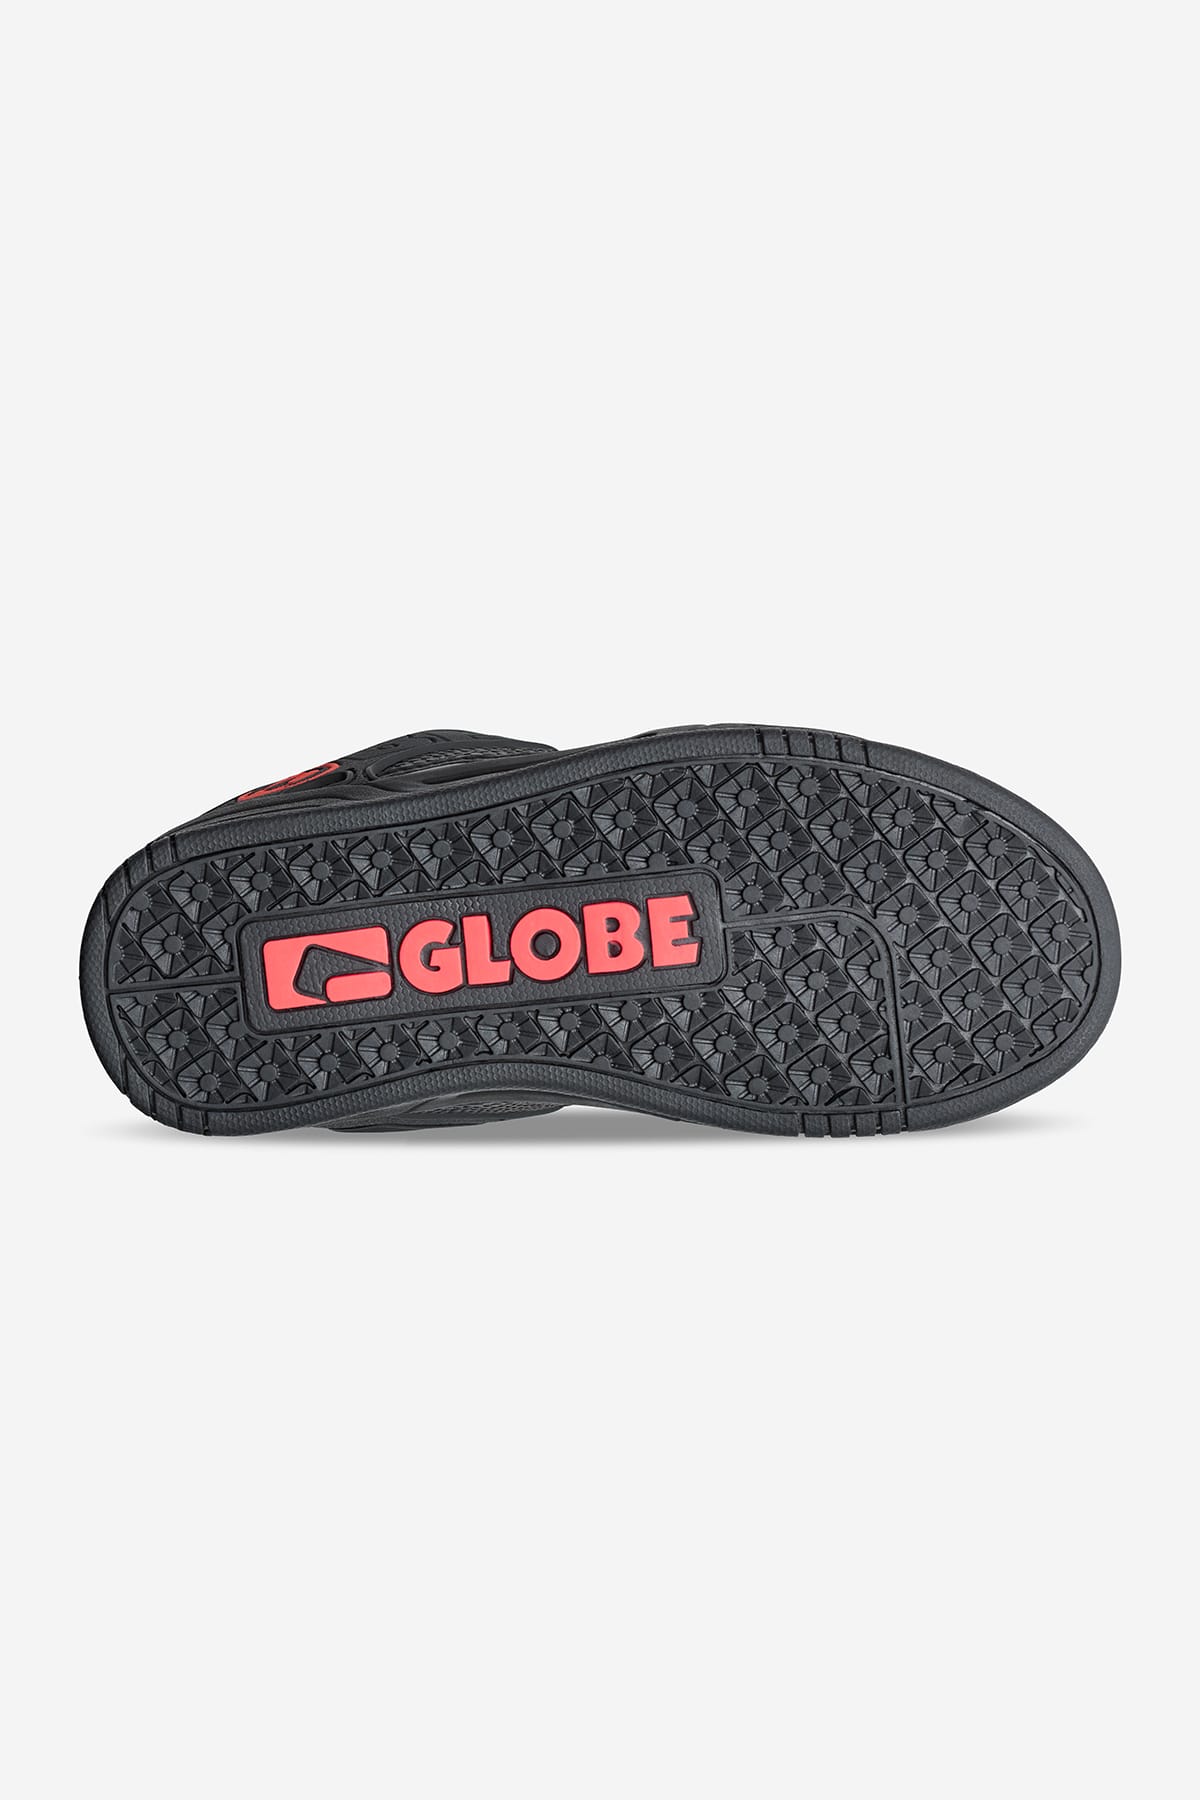 Globe - Tilt Kids - Black/Snake - skateboard Chaussures